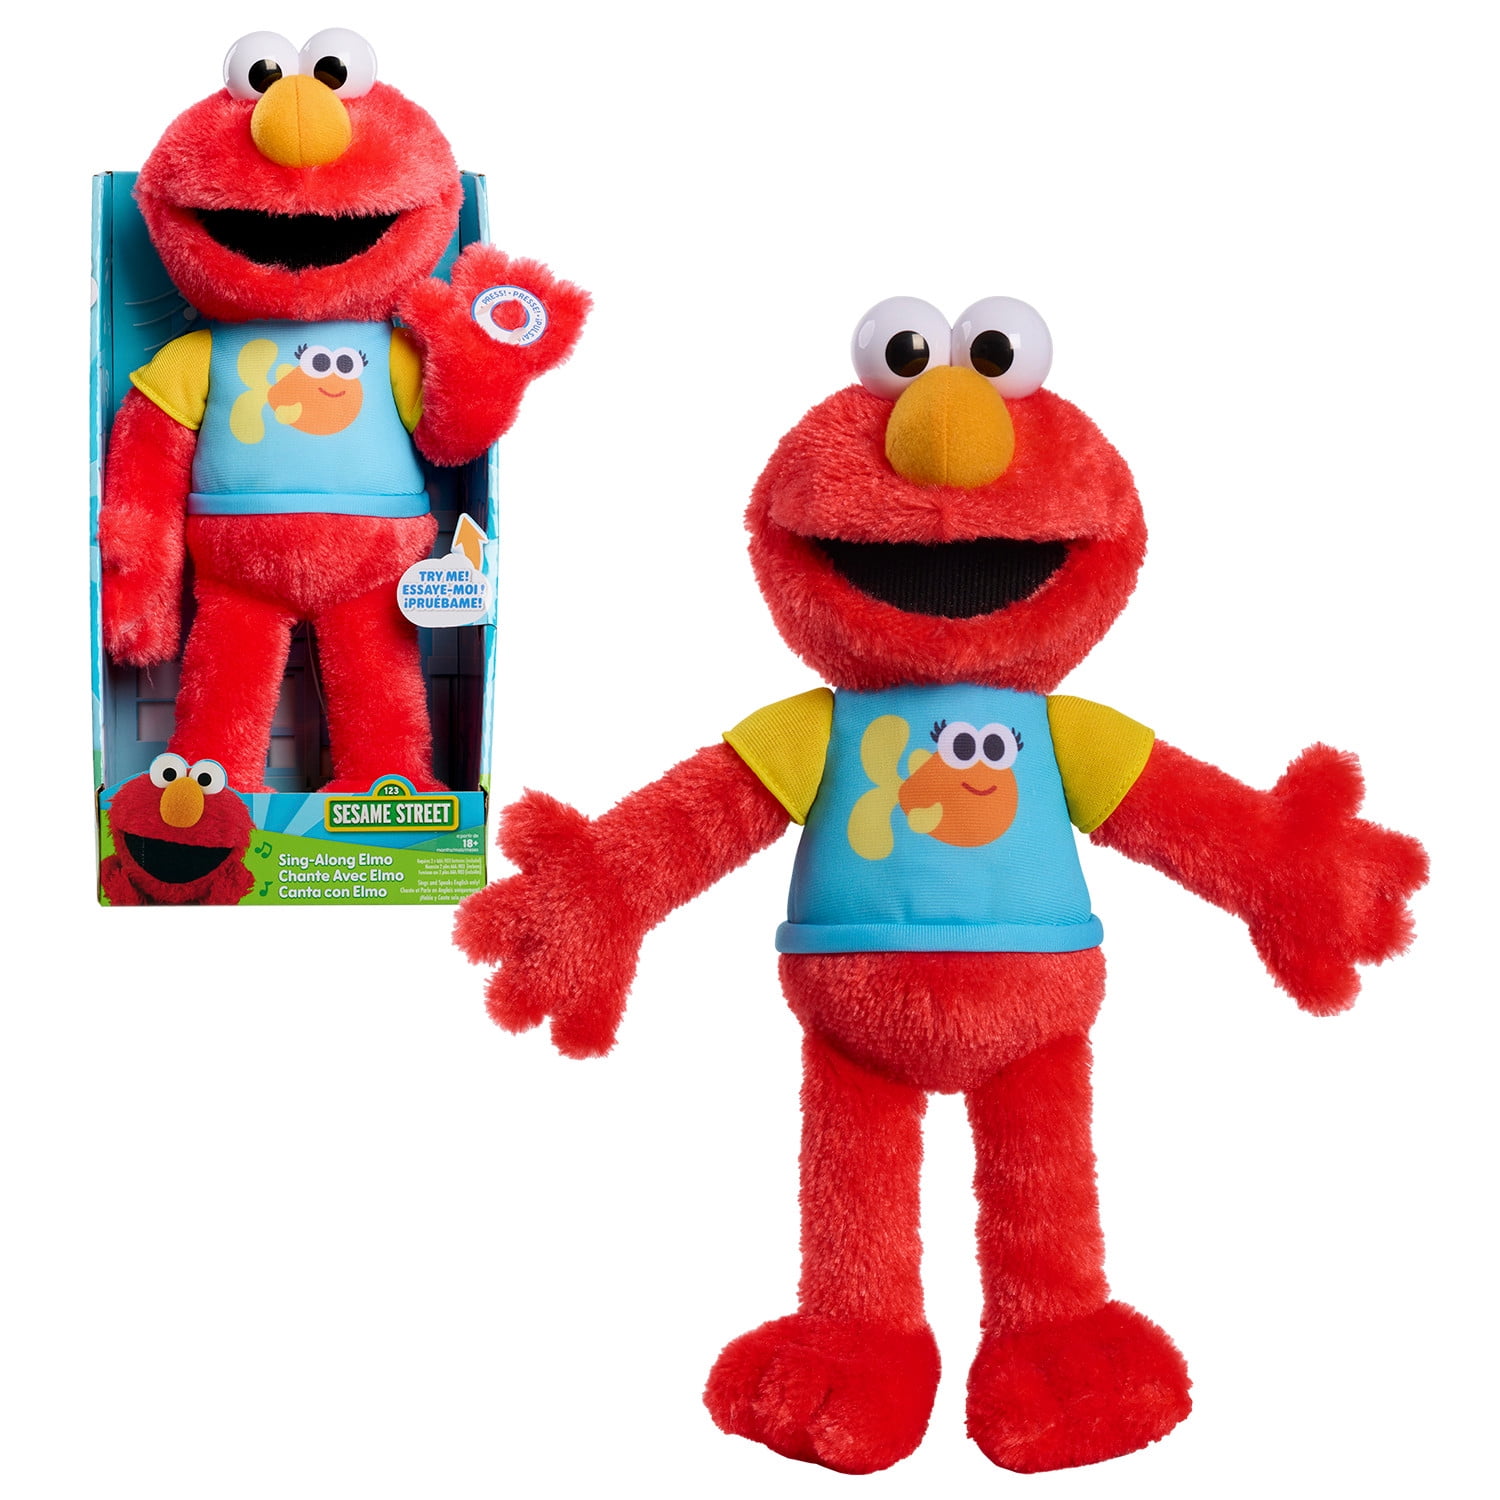 Sesame Street Monsters Learning & Development Toys